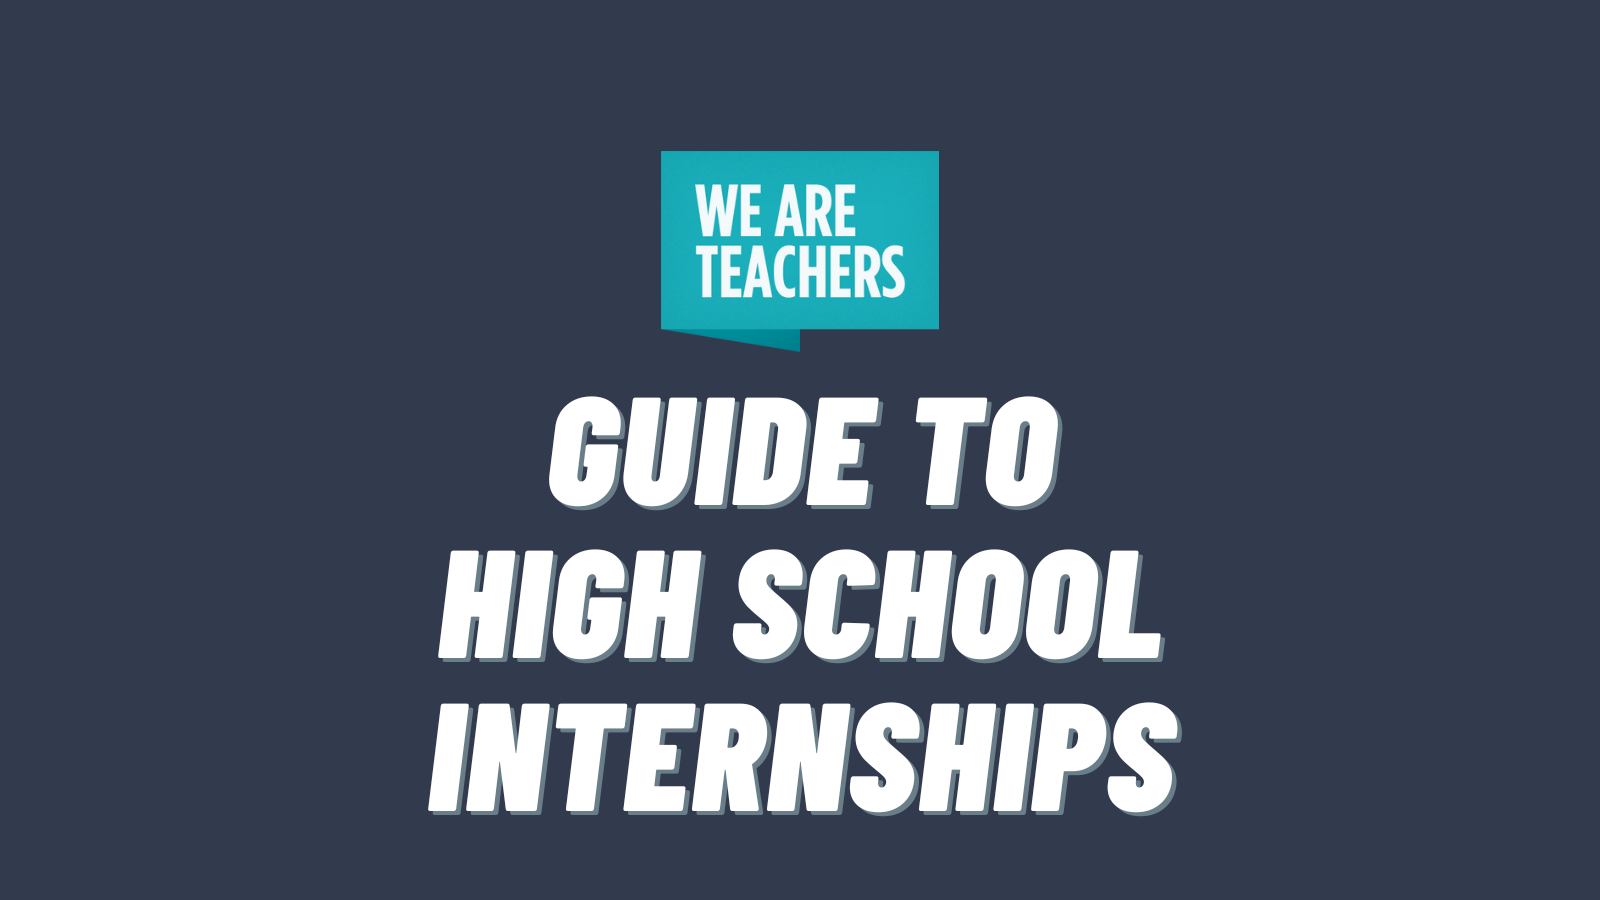 Guide to High School Internships text on dark background with WeAreTeachers logo